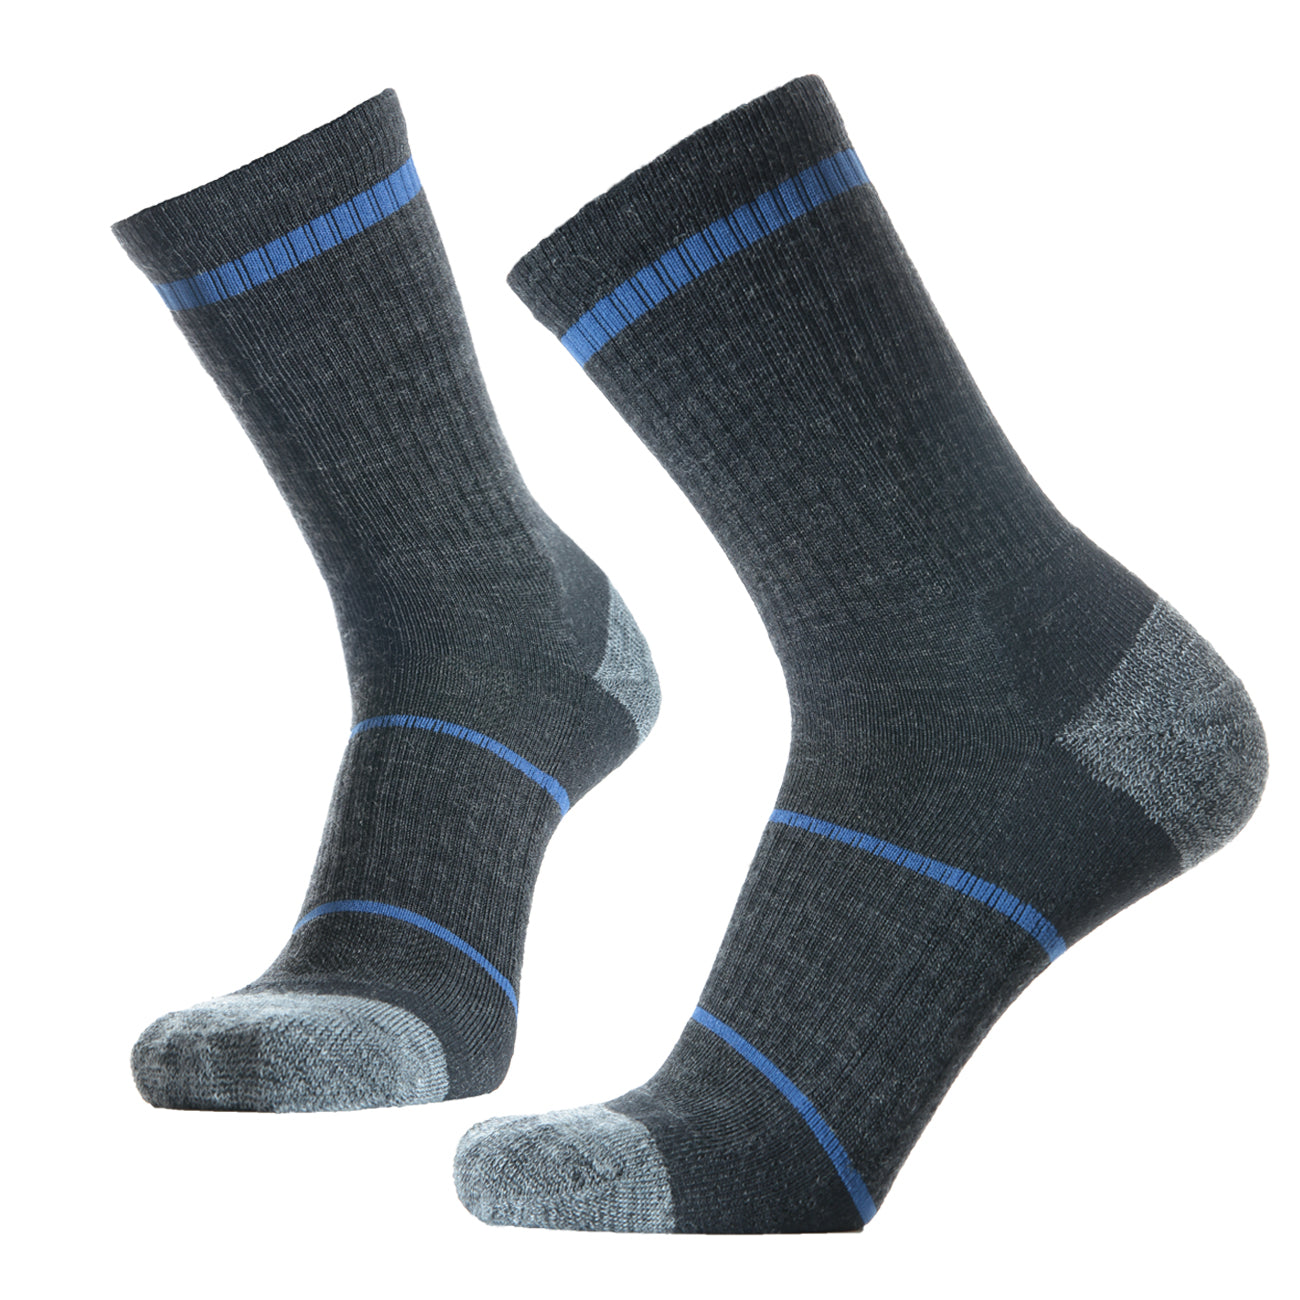 SOLAX 3 pairs Man's Merino wool Crew socks